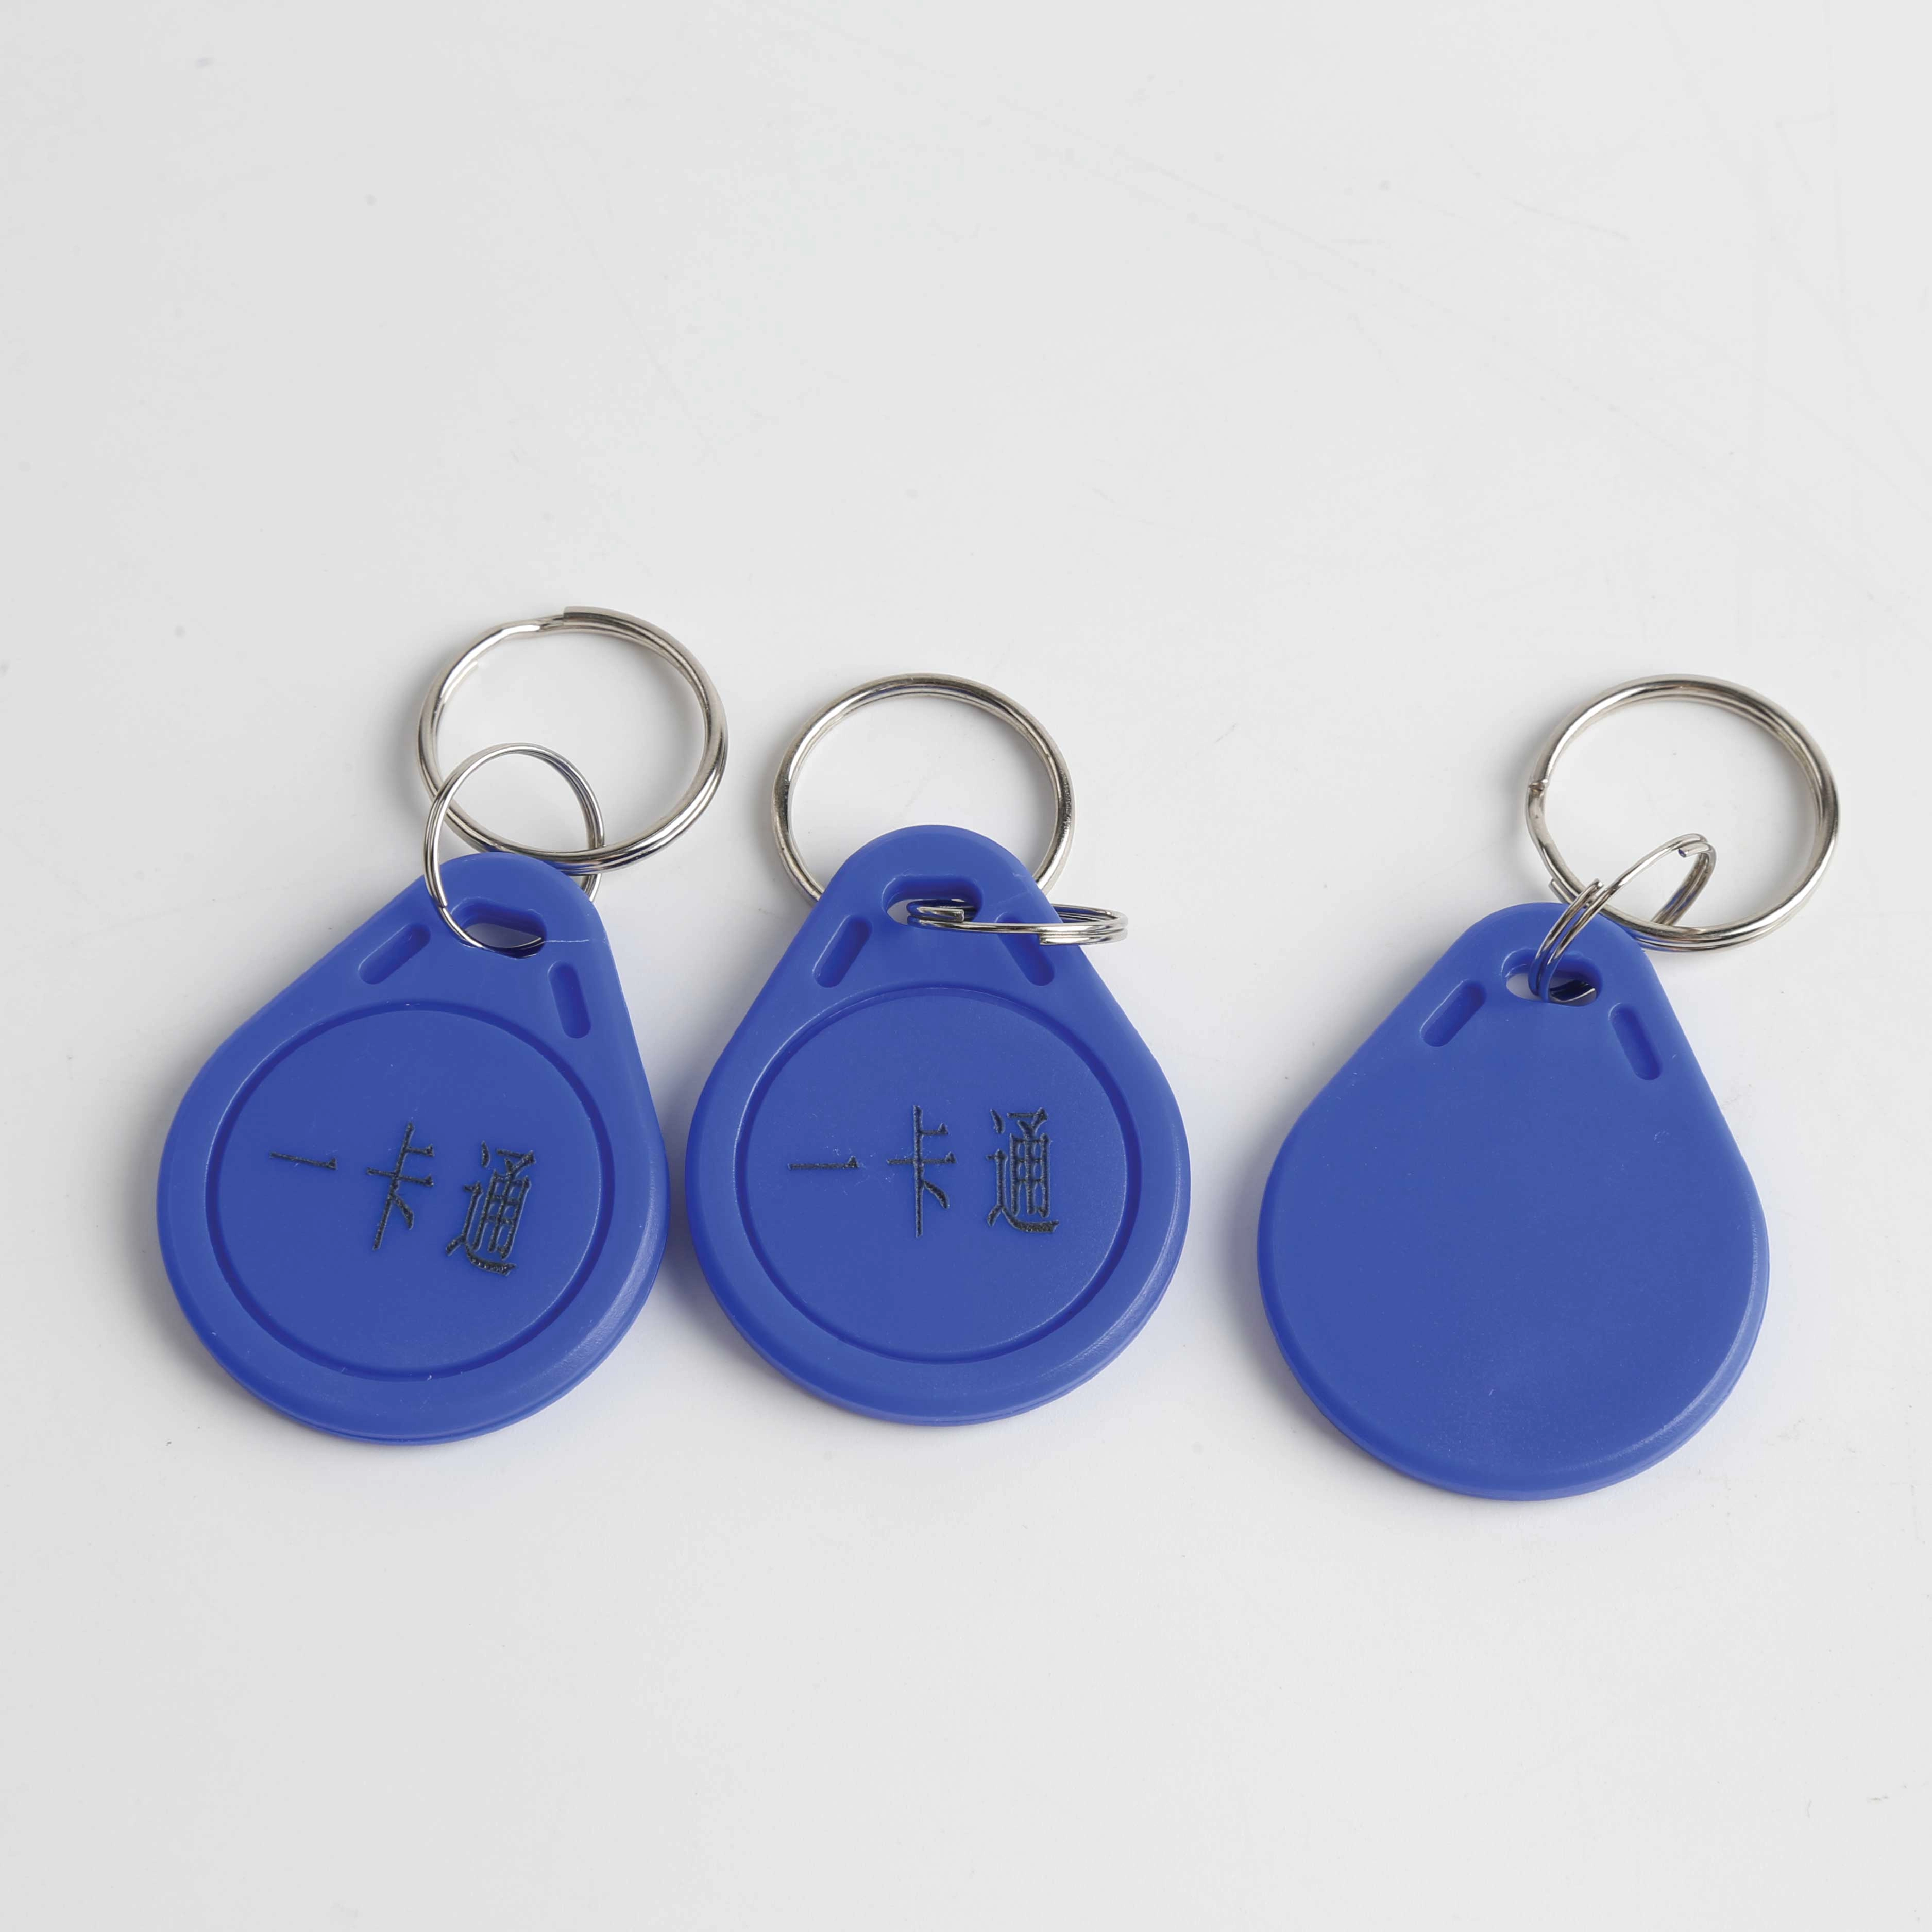 Porte-clés RFID reproductible pour le contrôle d'accès de l'entreprise